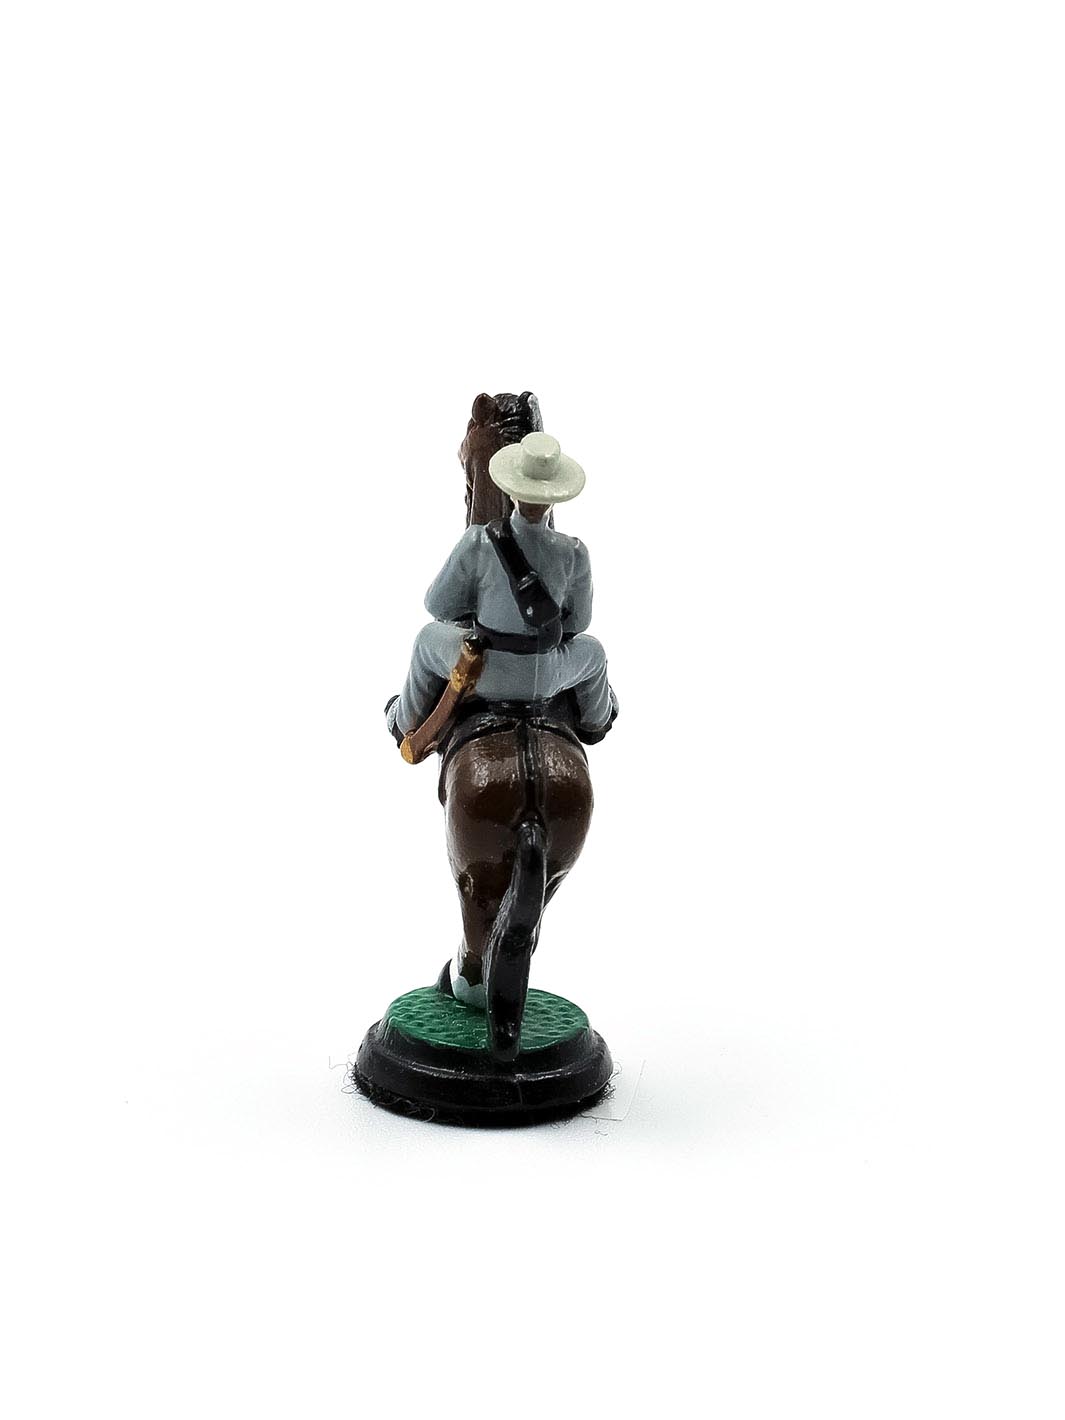 Piece Cavalier portant un uniforme gris sur un cheval brun et blanc vue de derriere